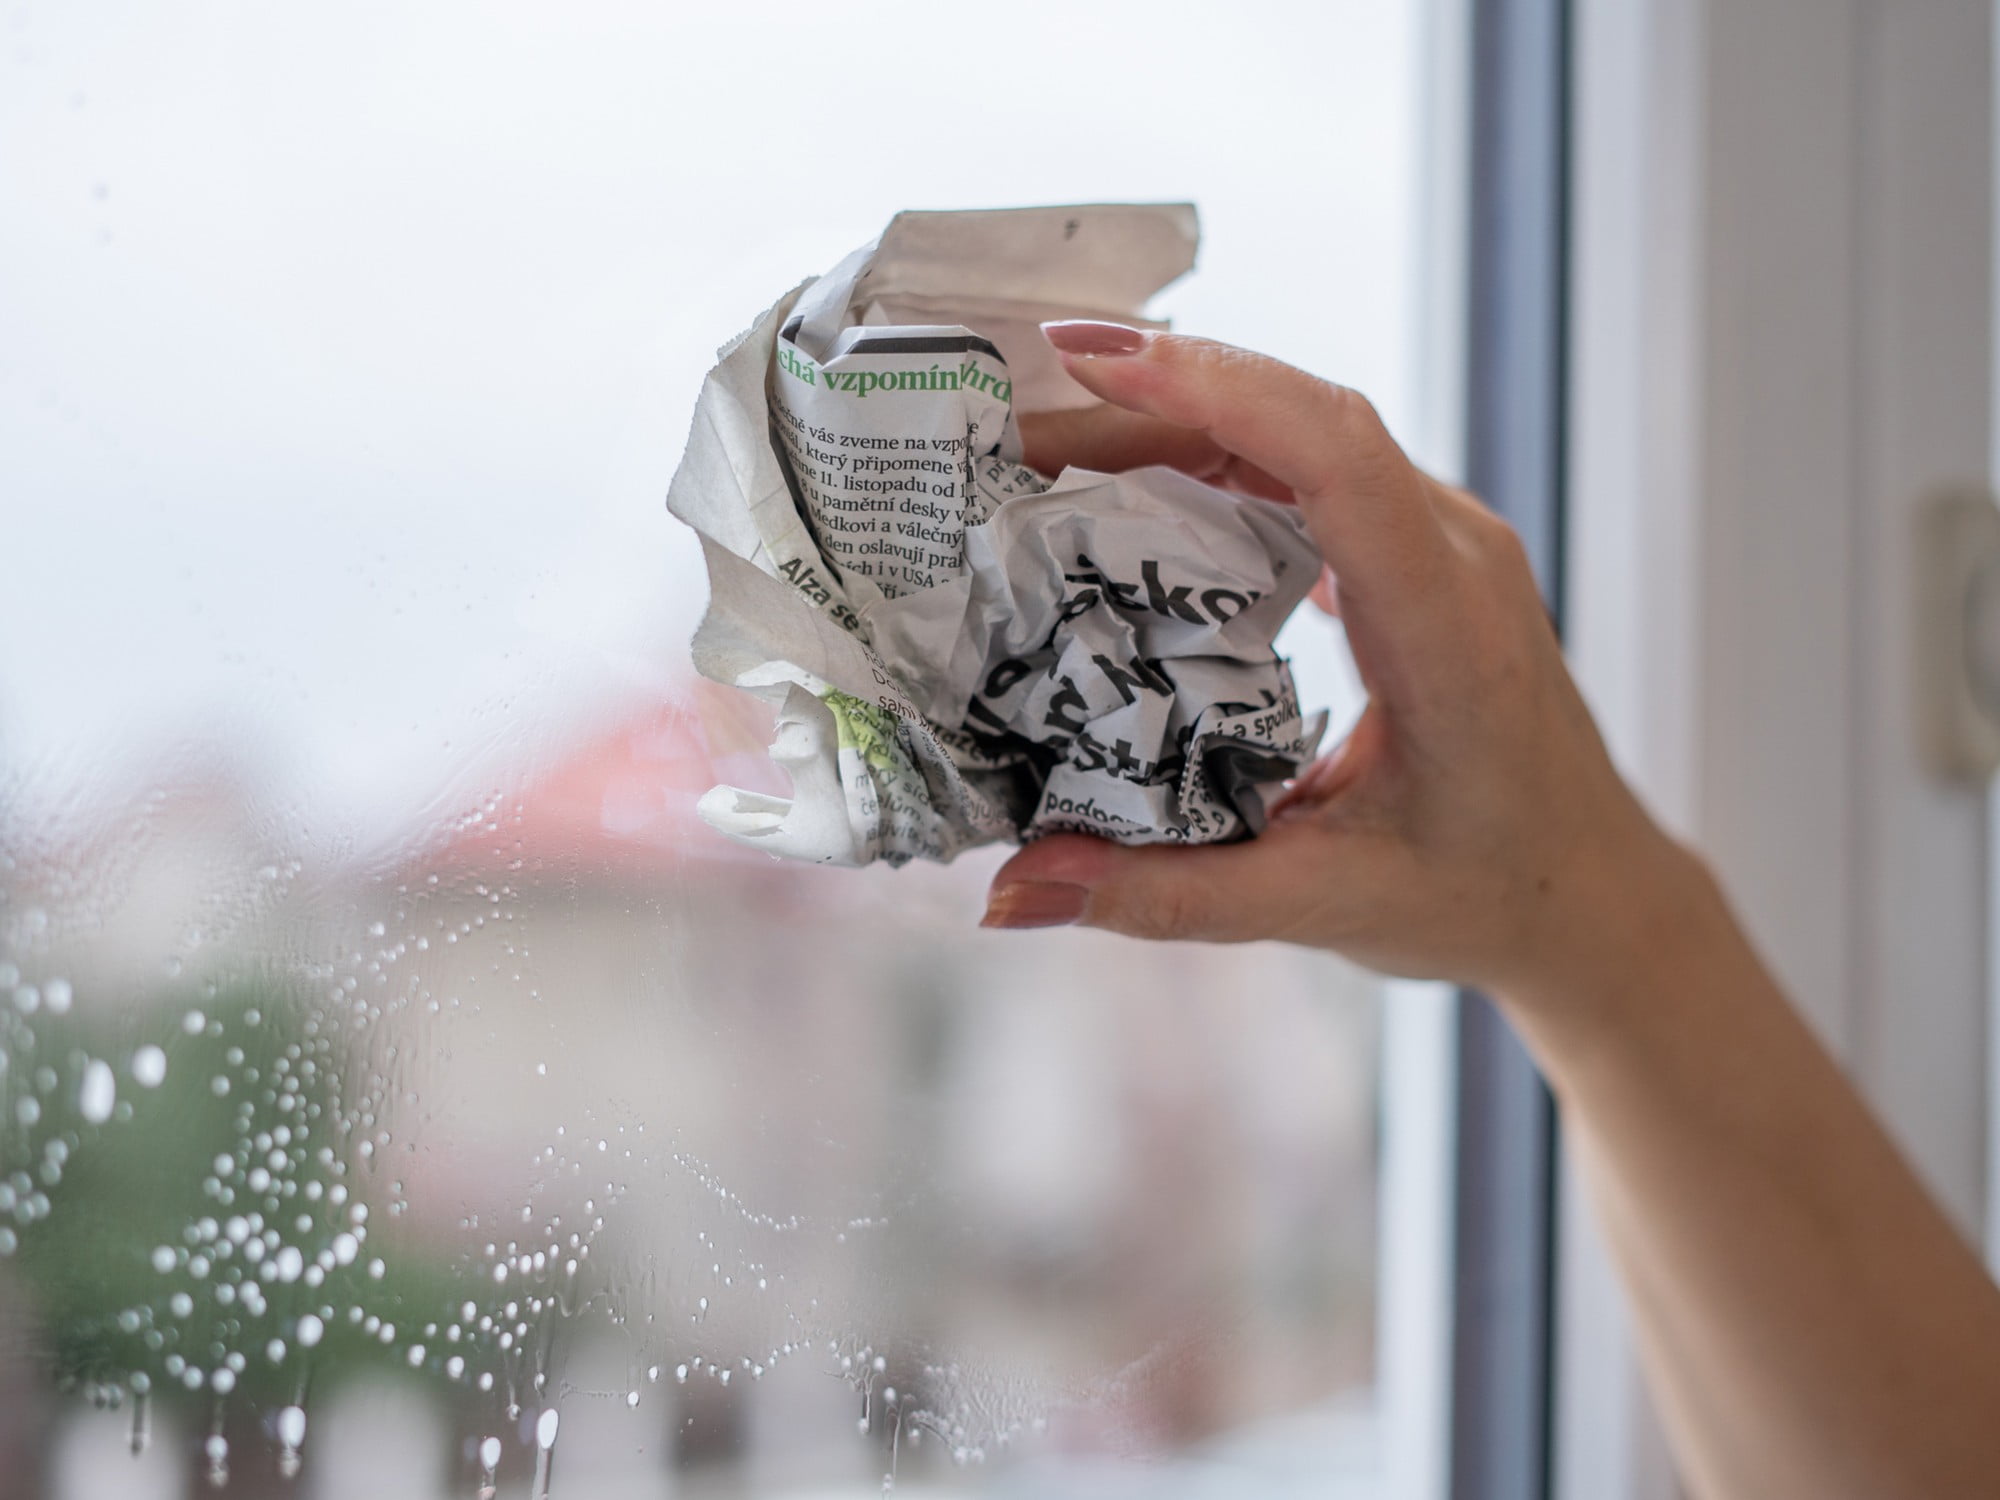 Uważaj na mycie okien gazetami: część farby może z nich wyciekać i plamić jasne ramy okienne.